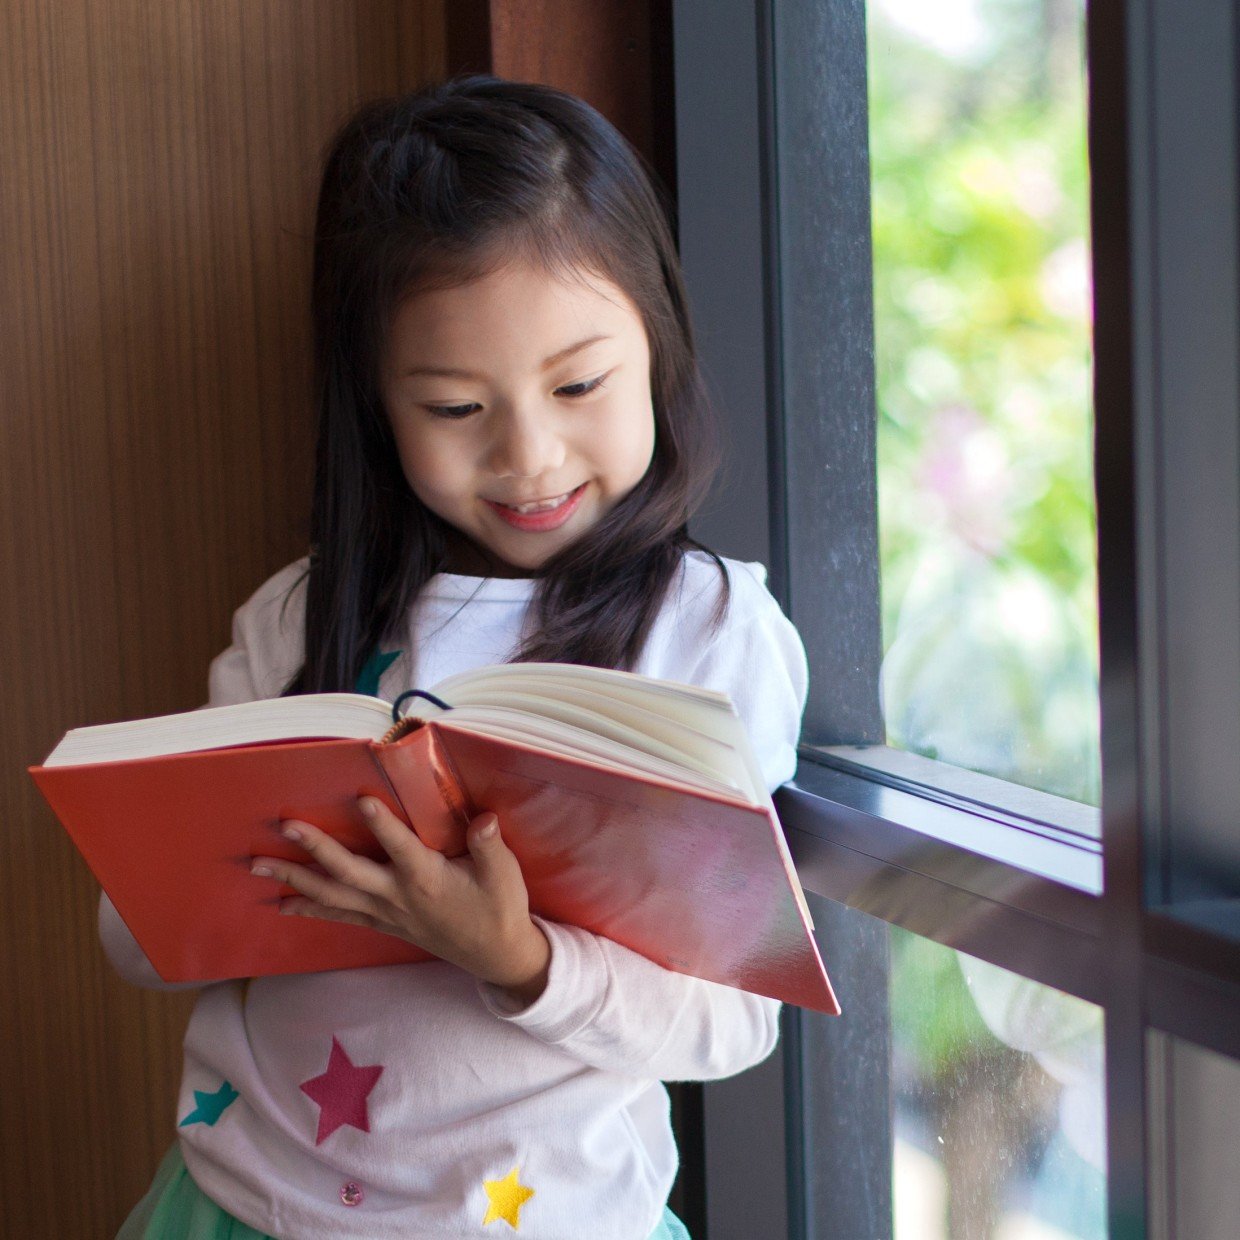  “読書好きの子ども”を持つ親がしている「5つの習慣」 